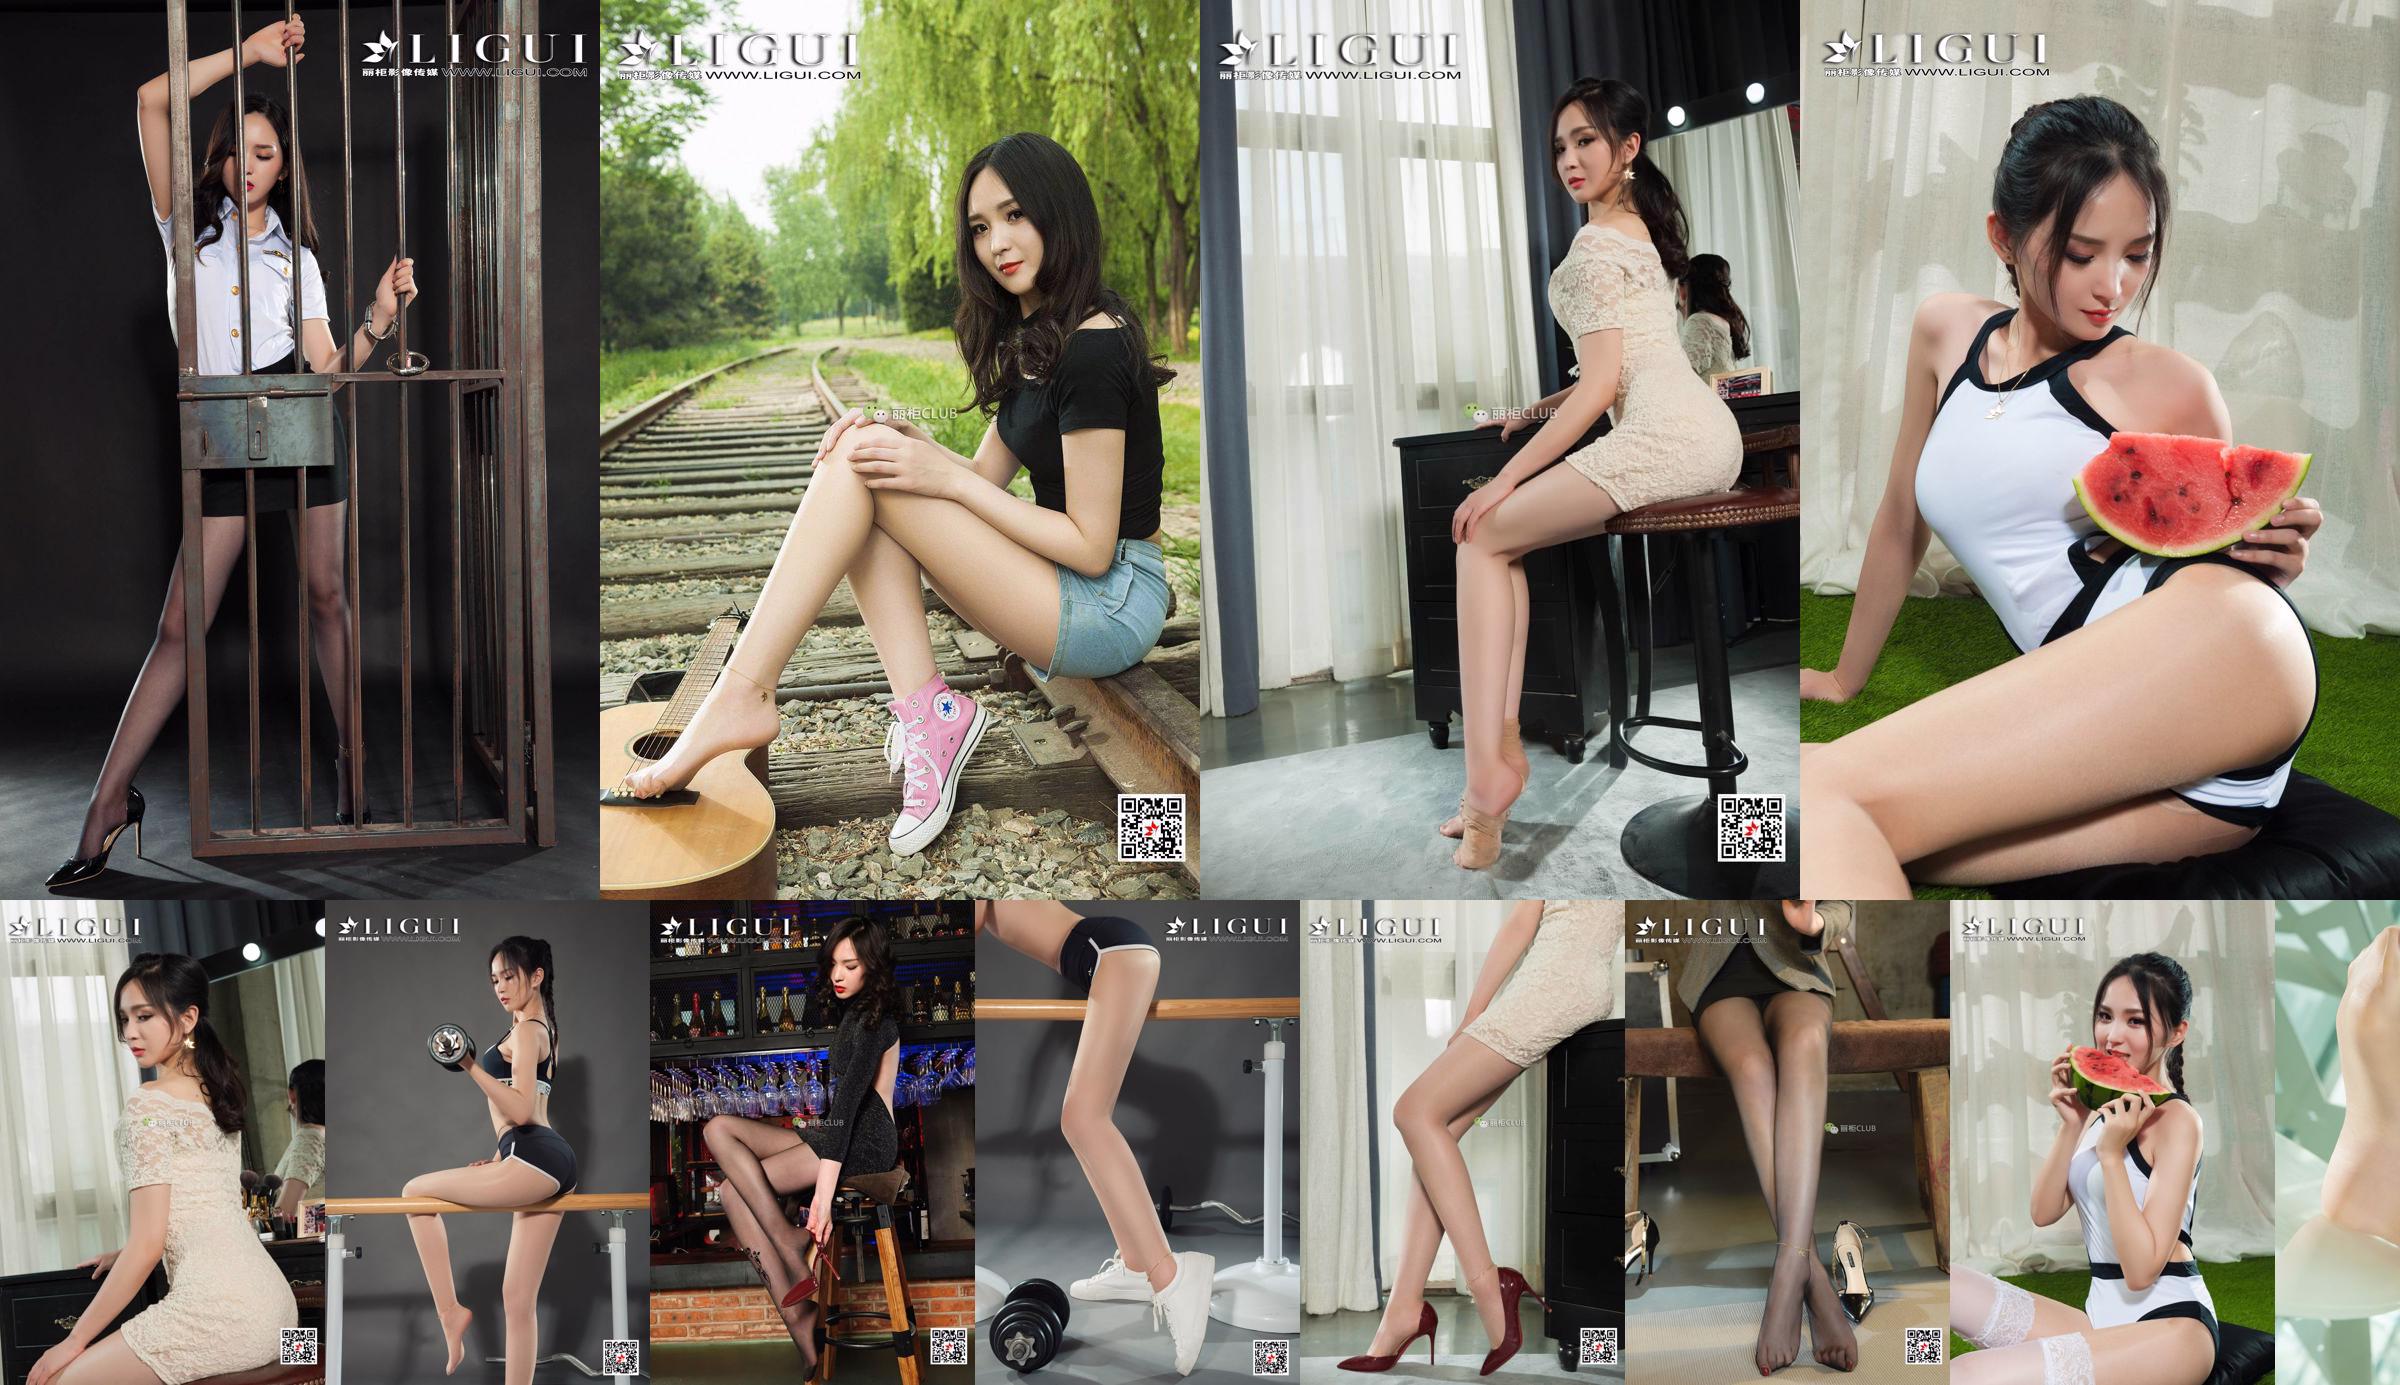 นางแบบขาเสี่ยวเกอ "Art Girl with Silky Feet" [LIGUI] Beautiful Legs and Silky Feet No.268445 หน้า 1